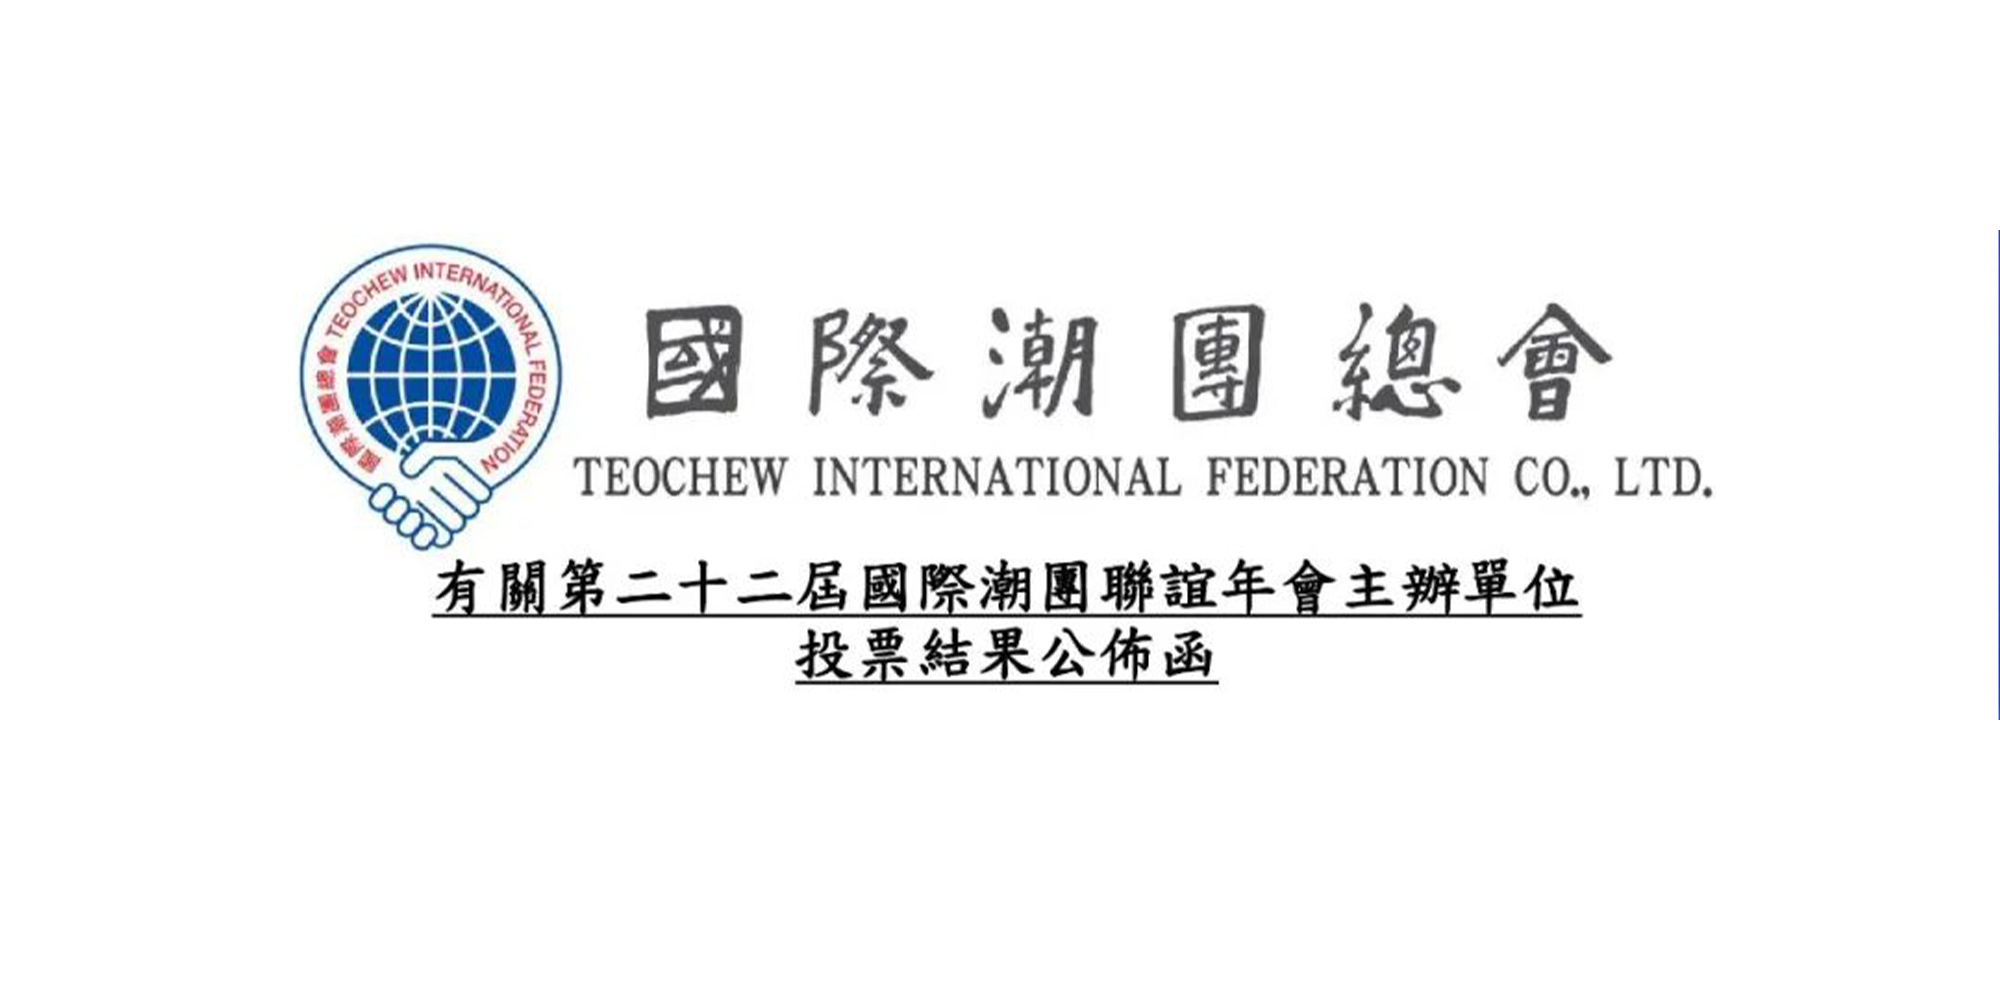 汕頭市獲得第22屆國際潮團聯誼年會主辦權